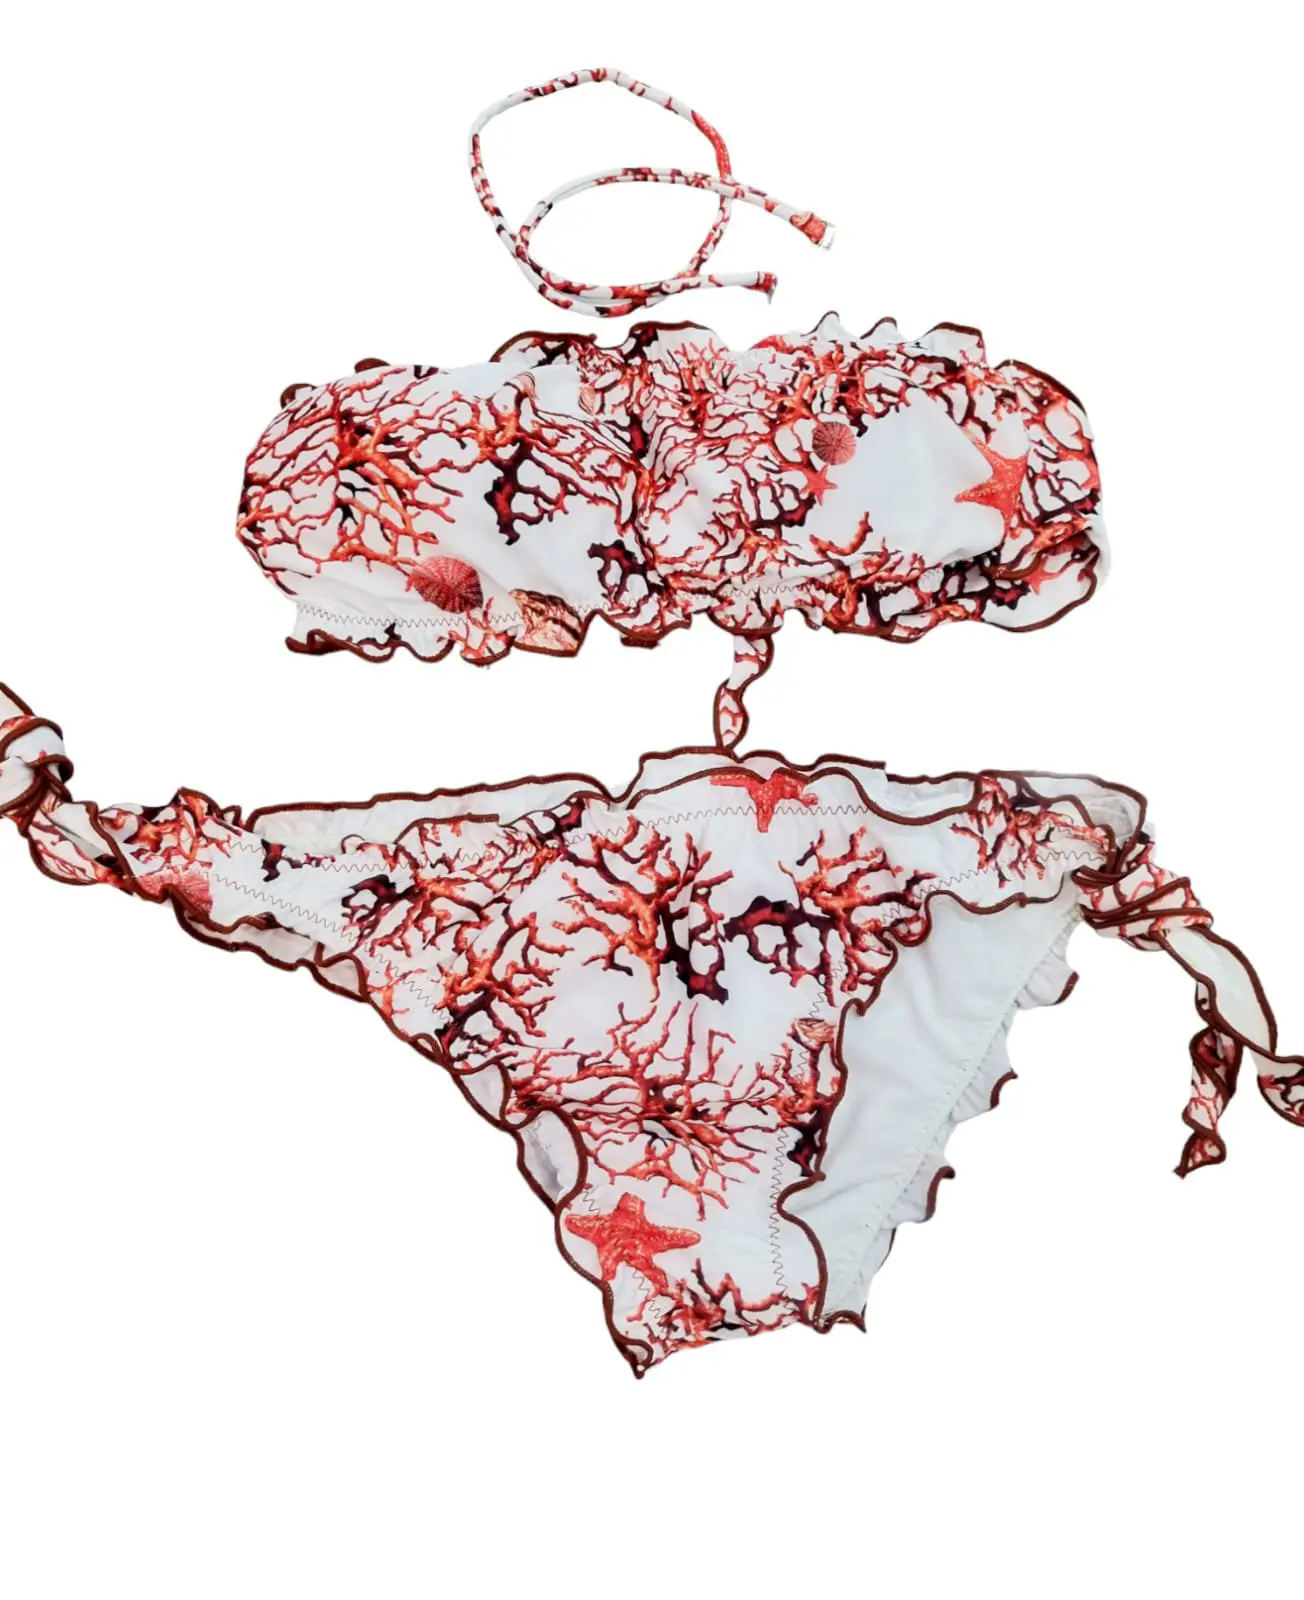 Bikini a fascia imbottita ,possibilità di mettere laccetto, slip regolabile con riccio.
Fantasia corallo rosso